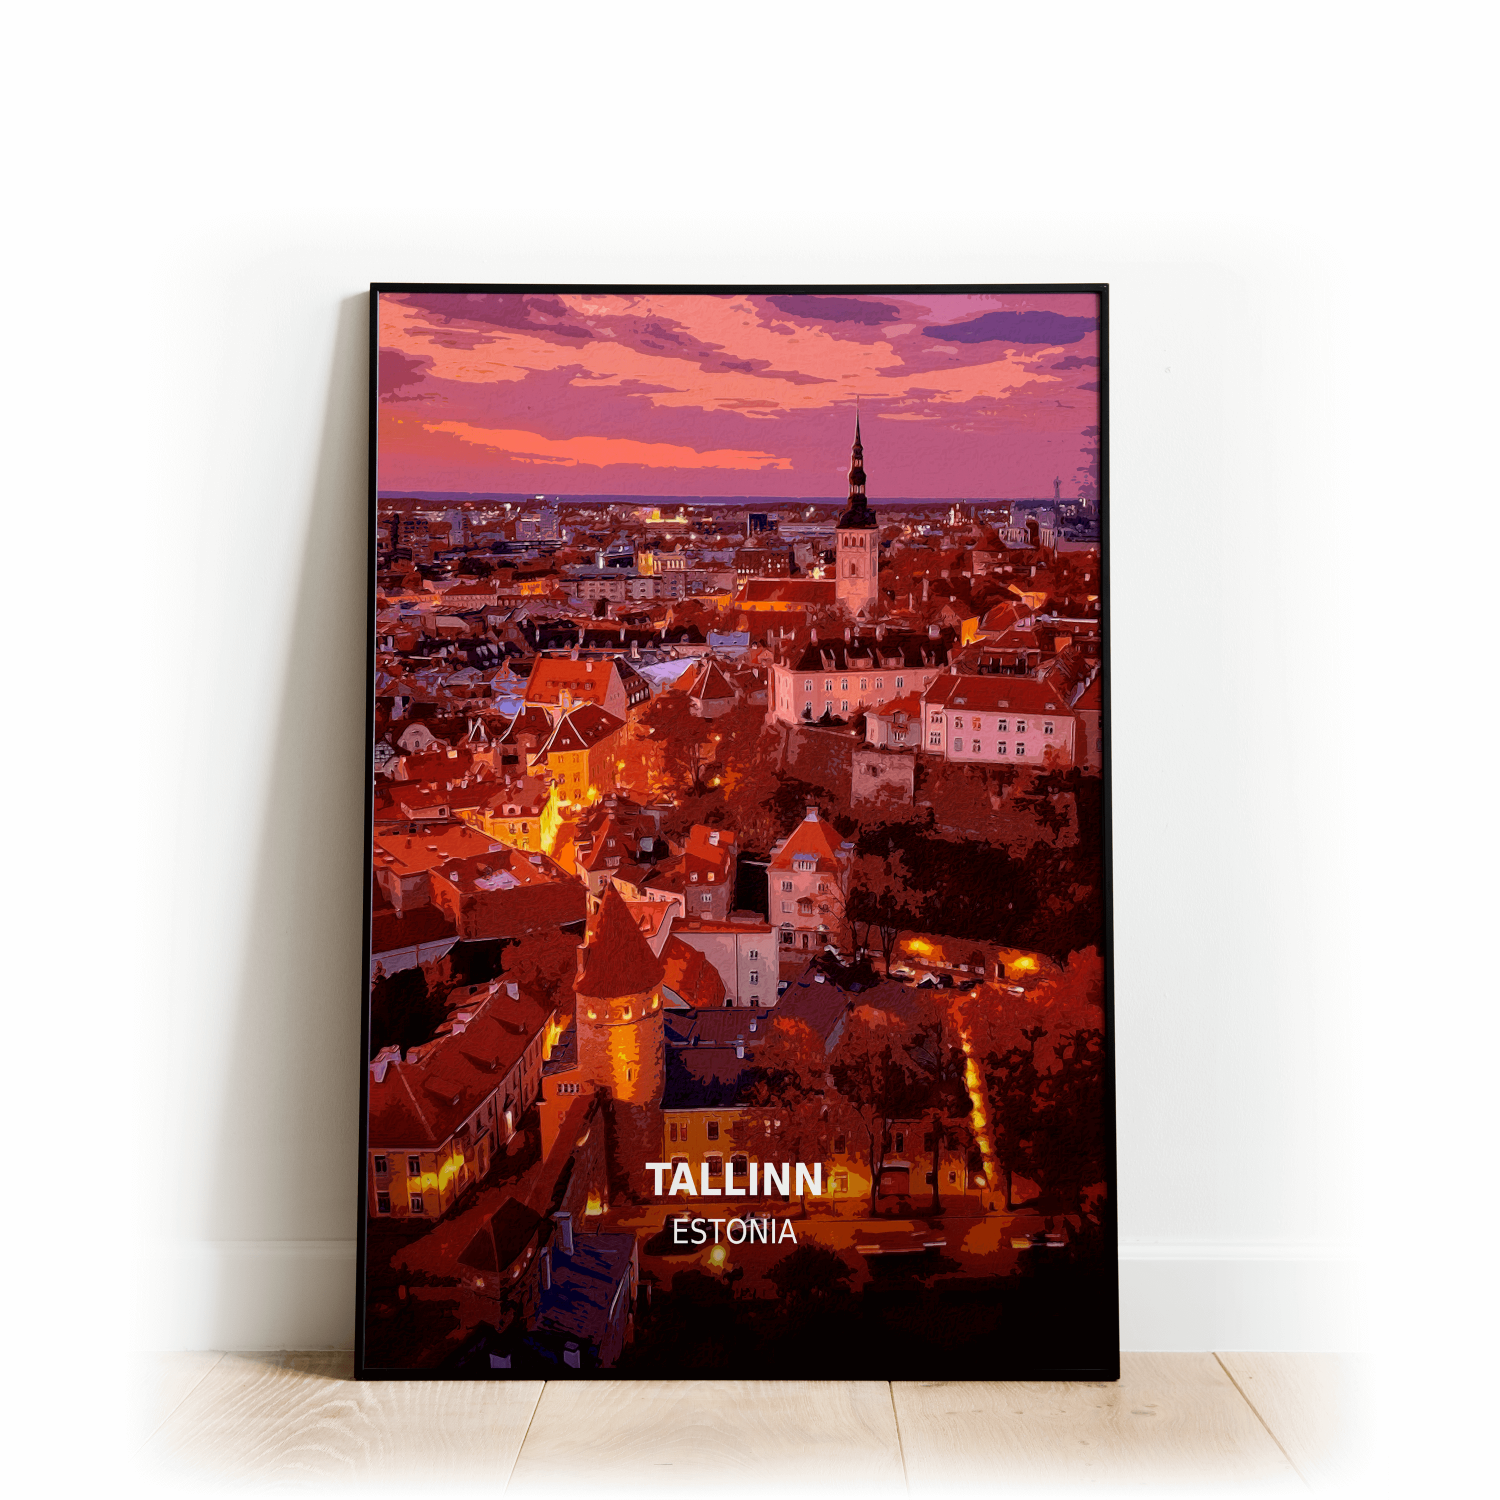 Tallinn - Estonia - Print - A4 - Standard - Print Only